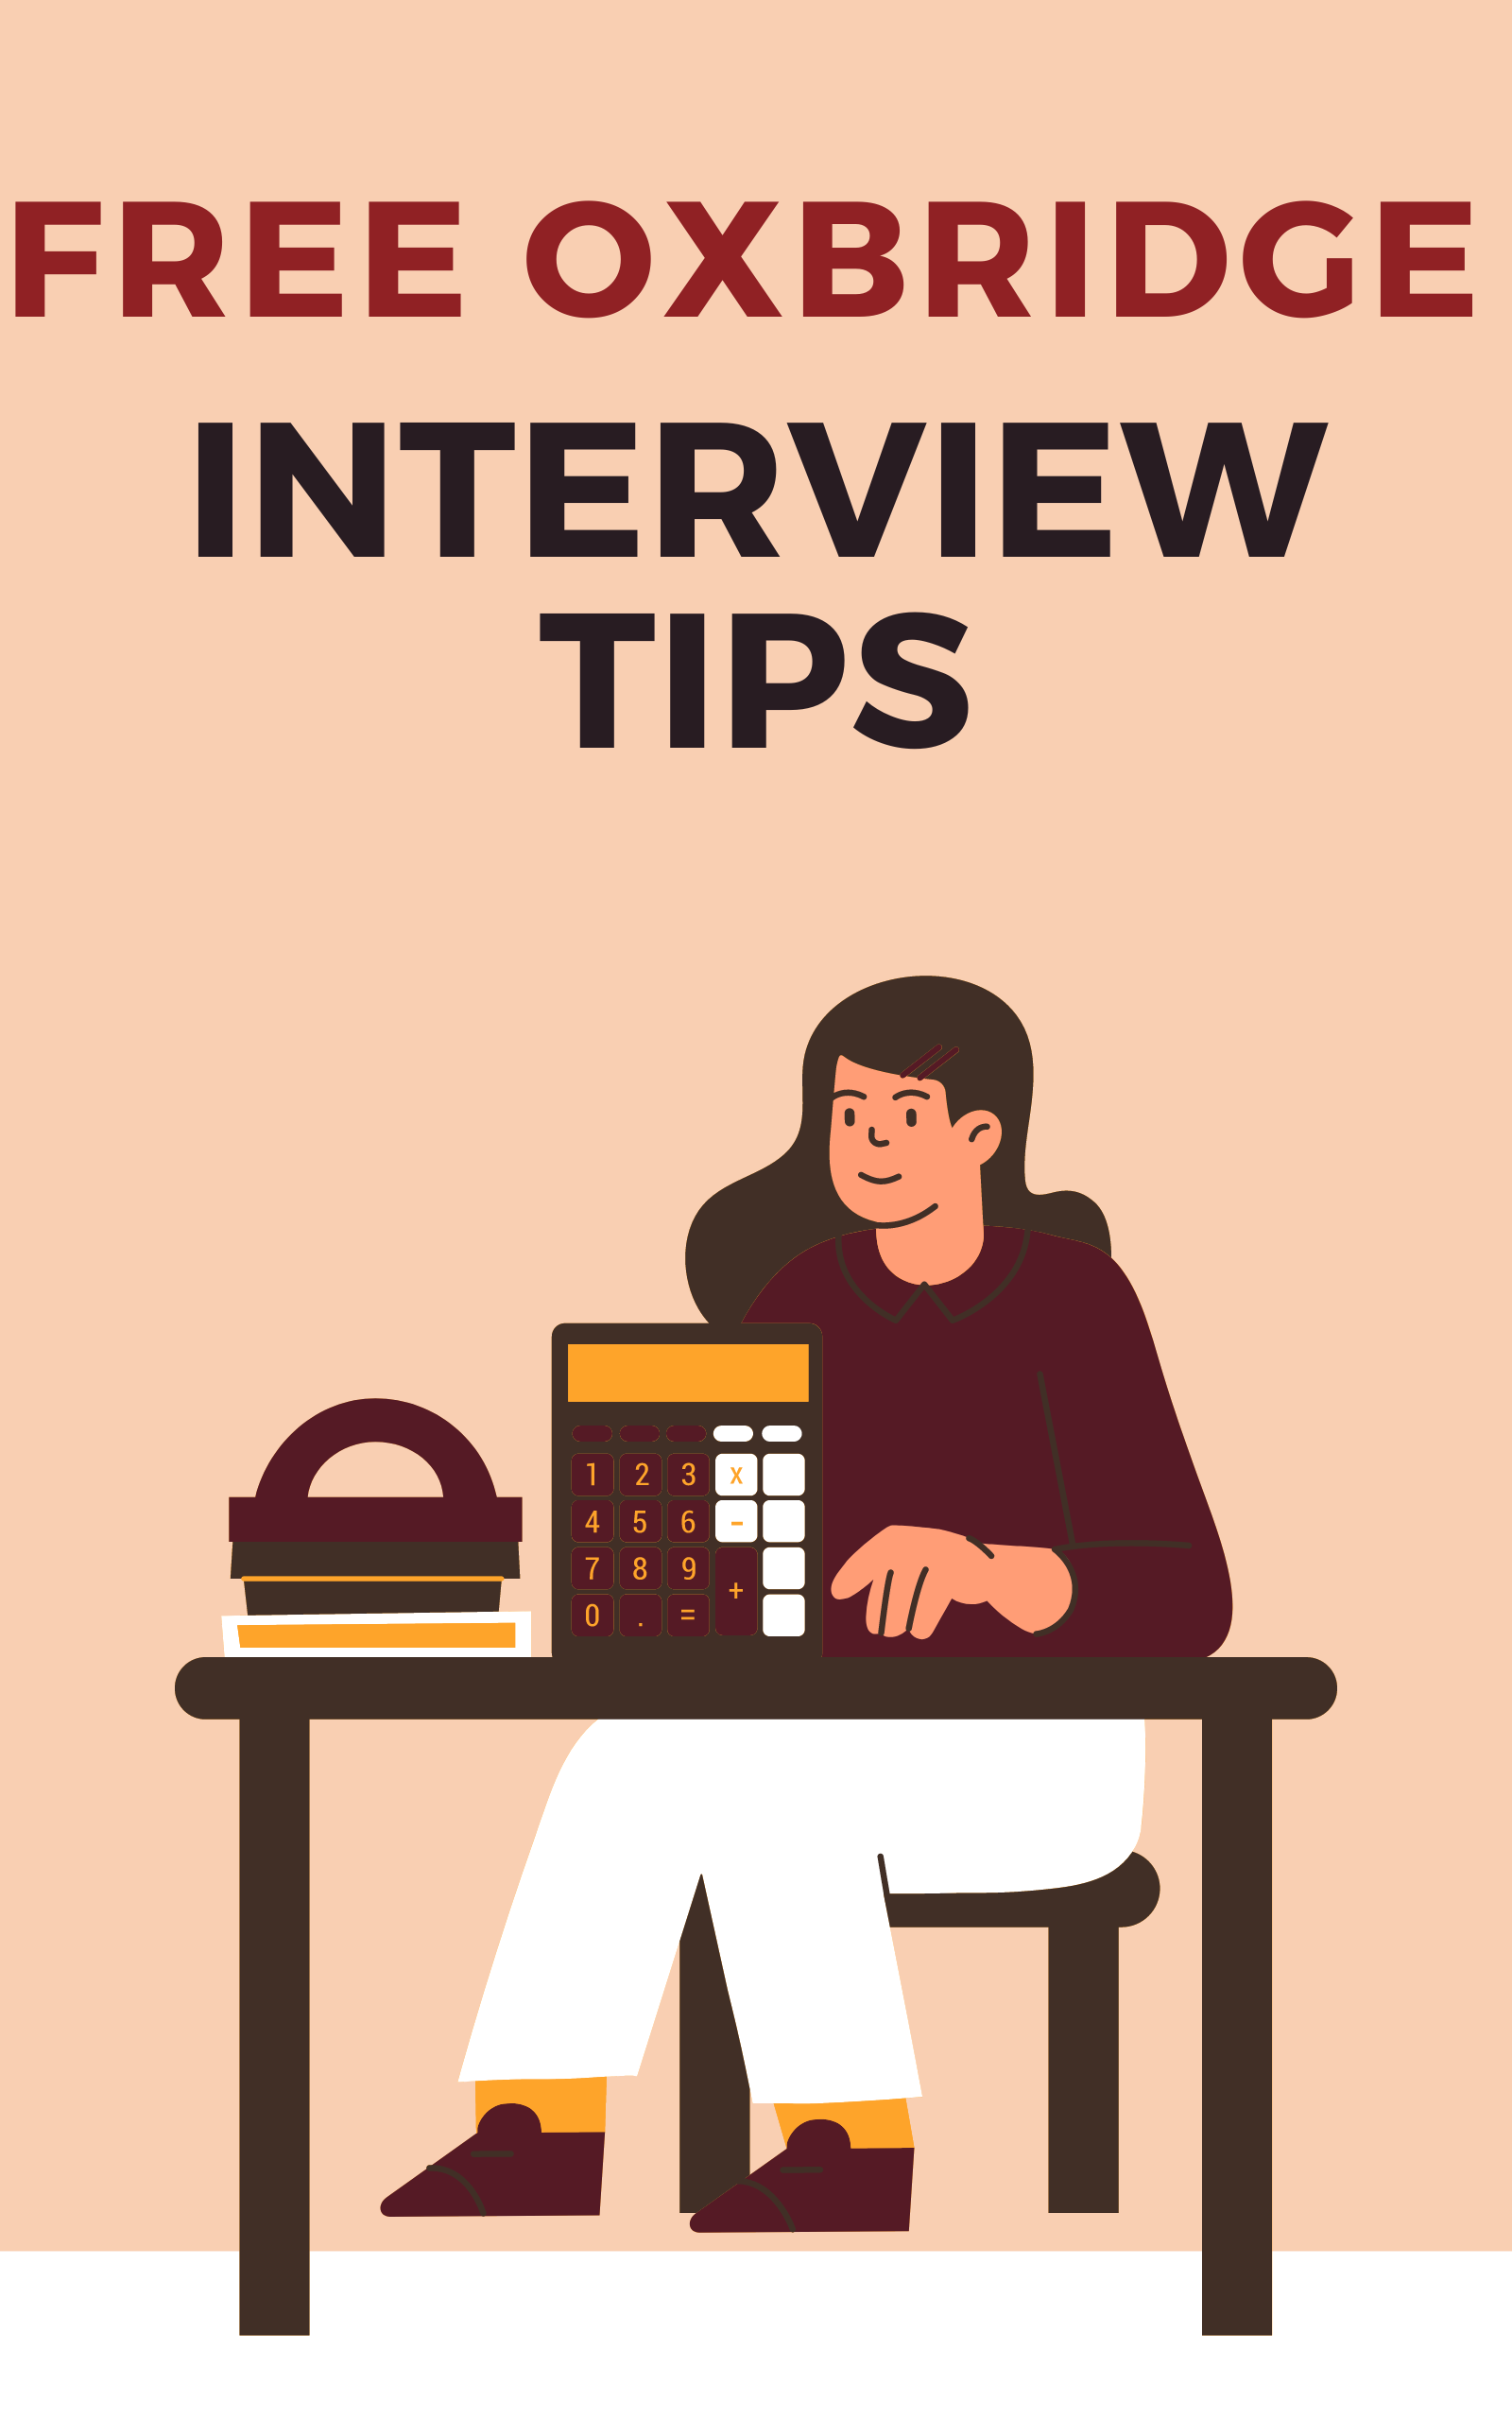 Oxbridge Interview tips advice